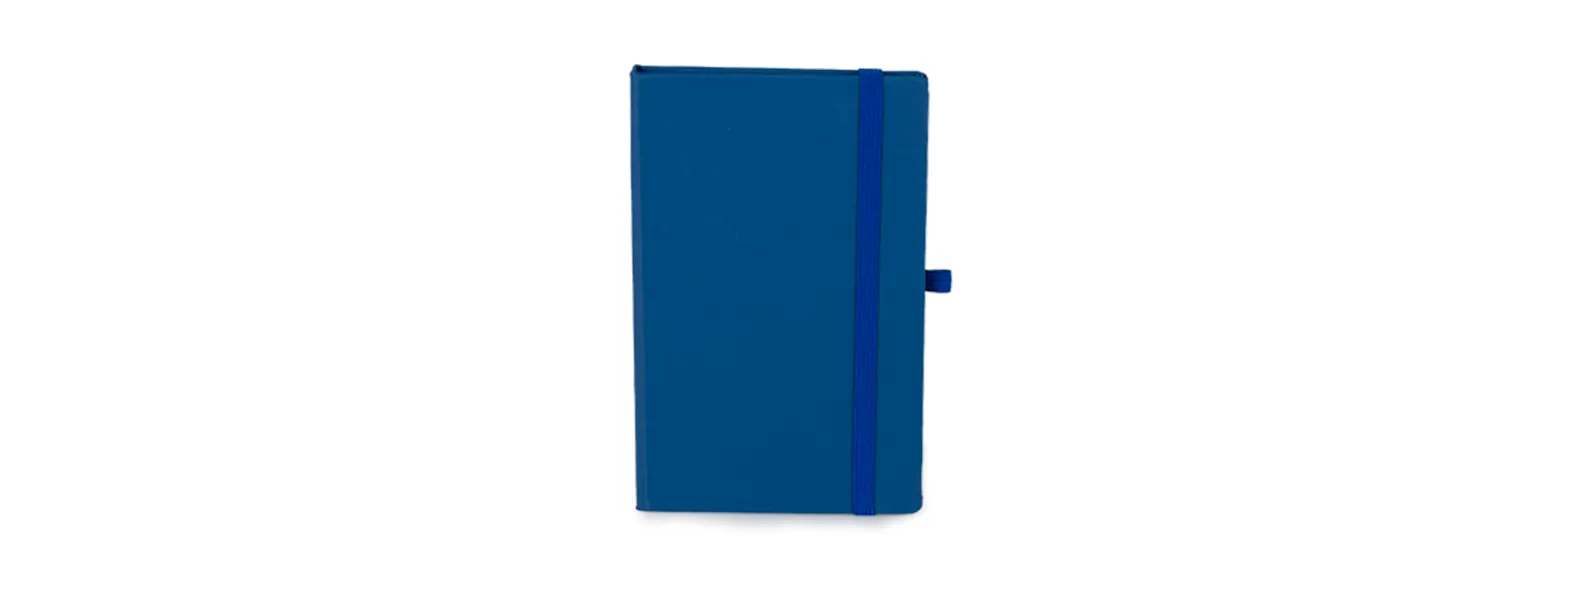 Caderno para anotações azul com capa dura. Conta com 80 folhas pautadas, marcador de página, porta caneta e elástico para fechamento. Gramatura da folha de 70 g/m2.